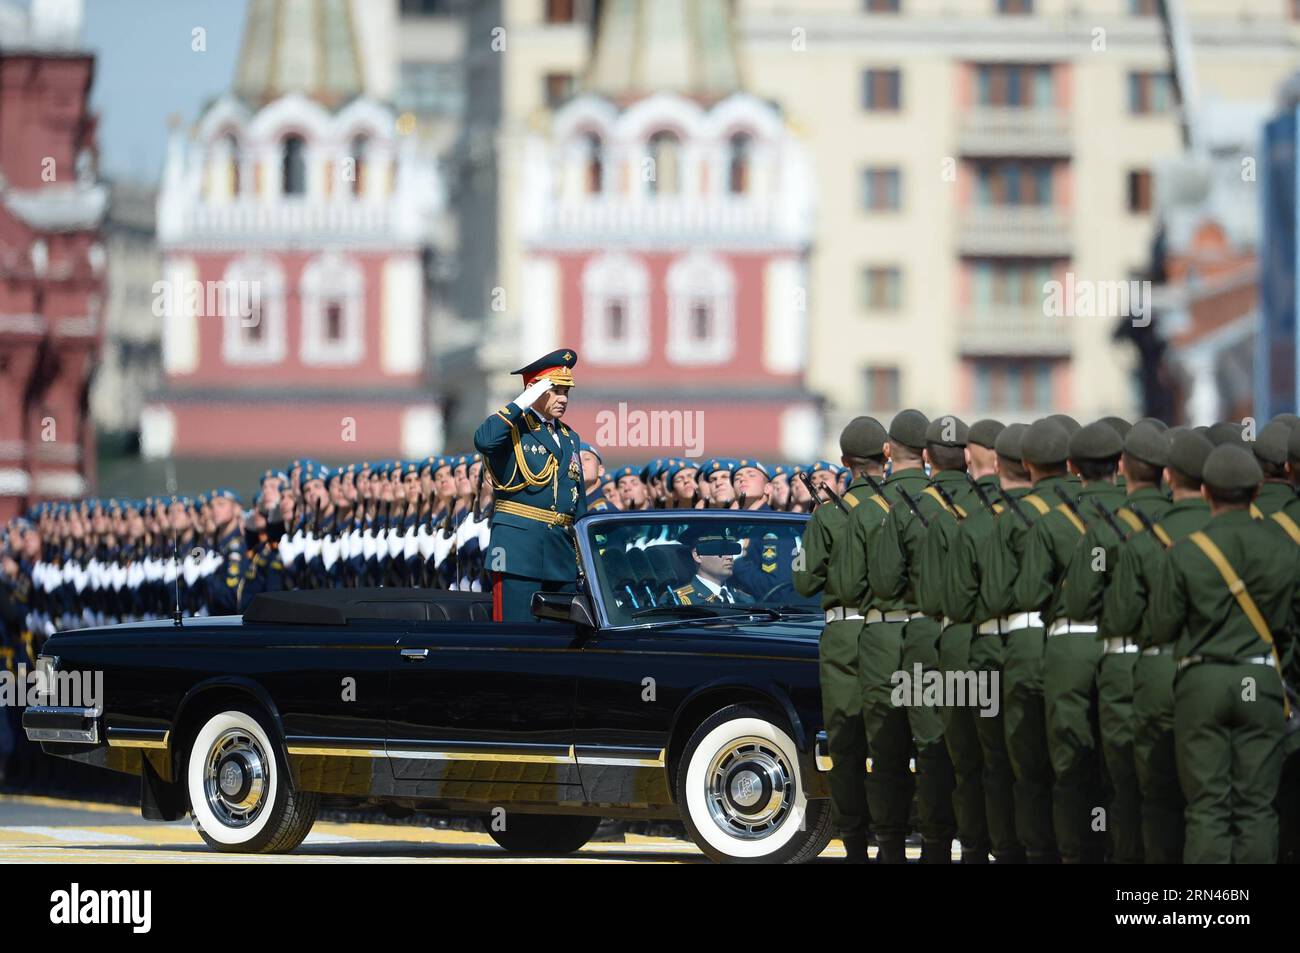 (150509) -- MOSCA, 9 maggio 2015 -- Sergei Shoigu, Ministro della difesa della Federazione Russa, ispeziona le truppe durante una parata militare in occasione del 70° anniversario della vittoria della grande Guerra Patriottica a Mosca, in Russia, 9 maggio 2015. ) RUSSIA-MOSCA-GIORNO DELLA VITTORIA PARATA JiaxYuchen PUBLICATIONxNOTxINxCHN Mosca 9 maggio 2015 Sergei Shoigu Ministri della difesa della Federazione Russa ispezionare le truppe durante una parata militare che segnava il 70 ° anniversario della vittoria del grande Patriottico era a Mosca Russia 9 maggio 2015 Russia Mosca Parata del giorno della vittoria JiaxYuchen PUBLICATIONxNOTxINxCHN Foto Stock